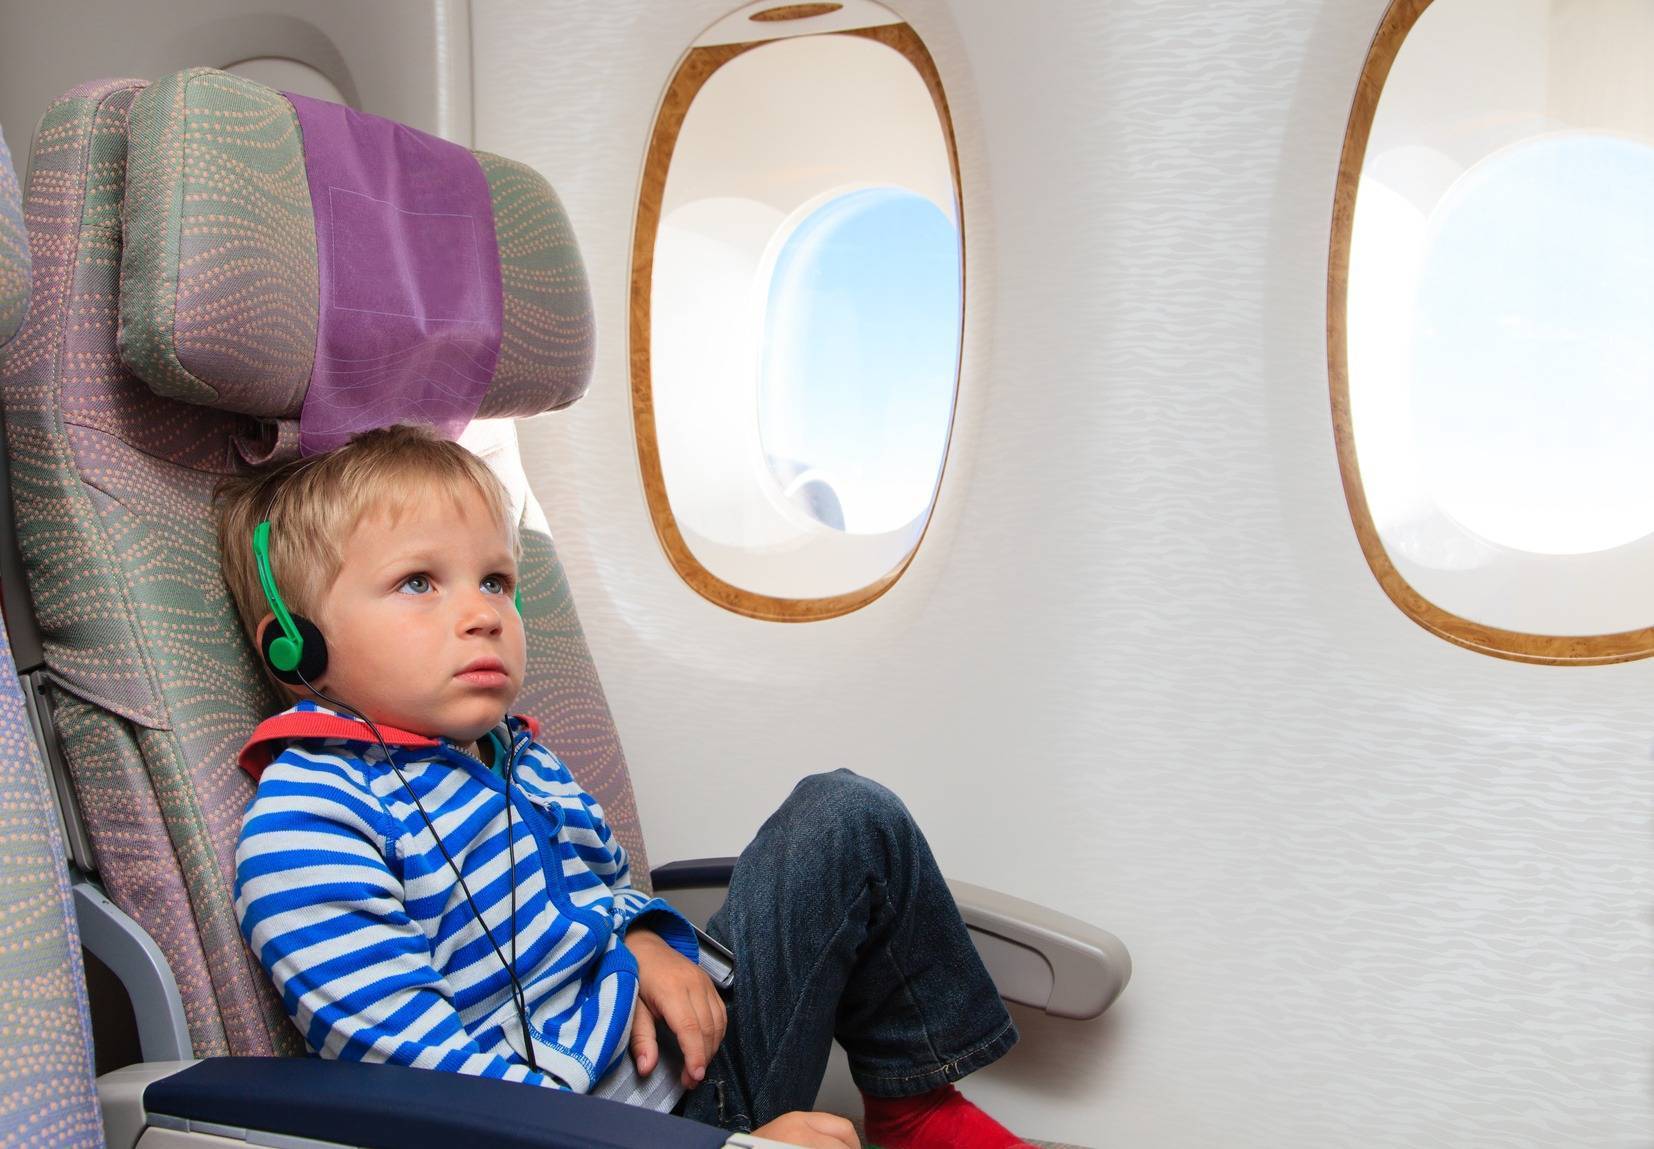 Особенности полета с ребенком: документы, что взять с собой, лайфхаки